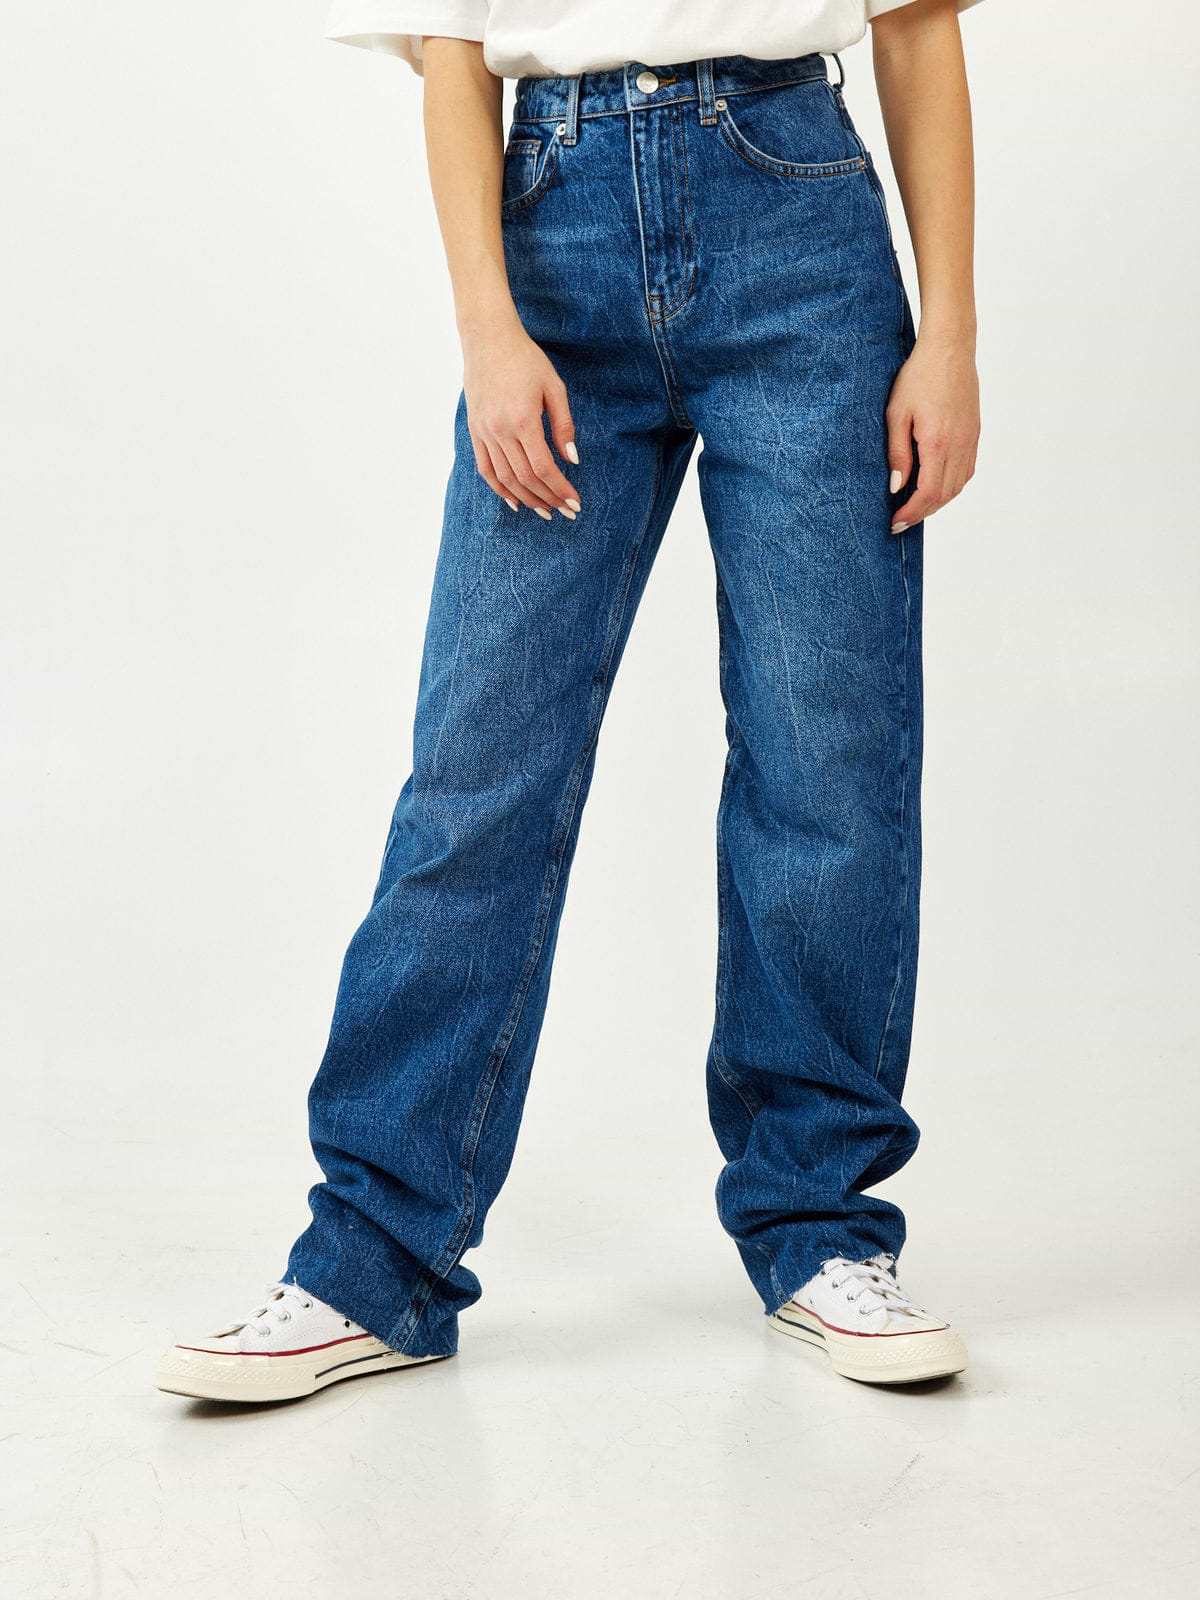 מכנסי ג'ינס בגזרת Wide Leg / נשים- NA-KD|נייקד